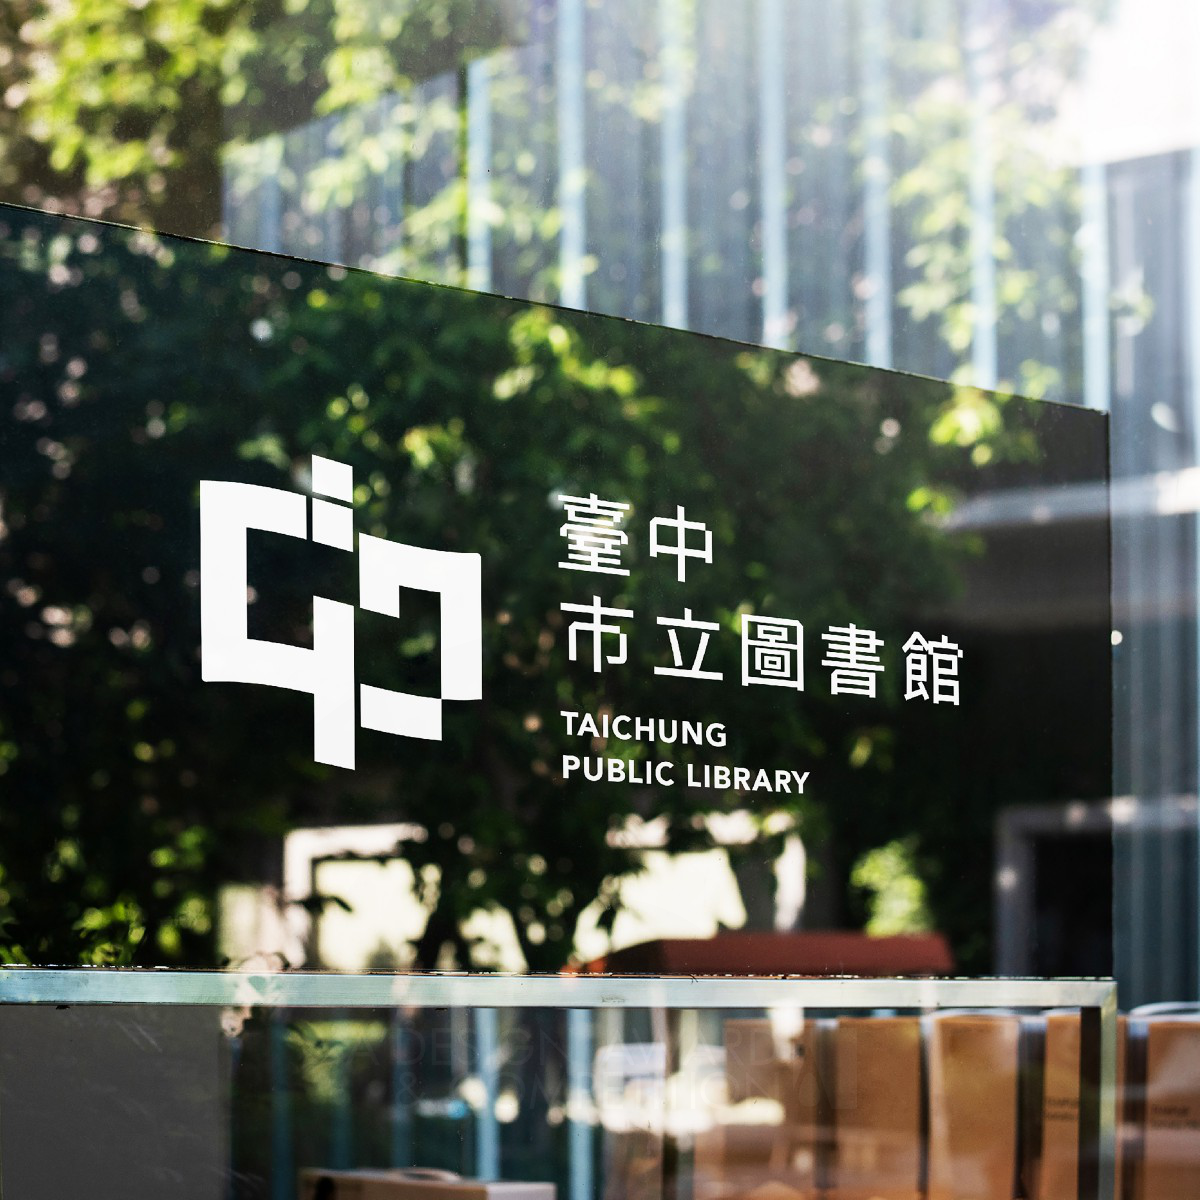 Taichung Public Library: Een Fusie van Natuur en Beschaving